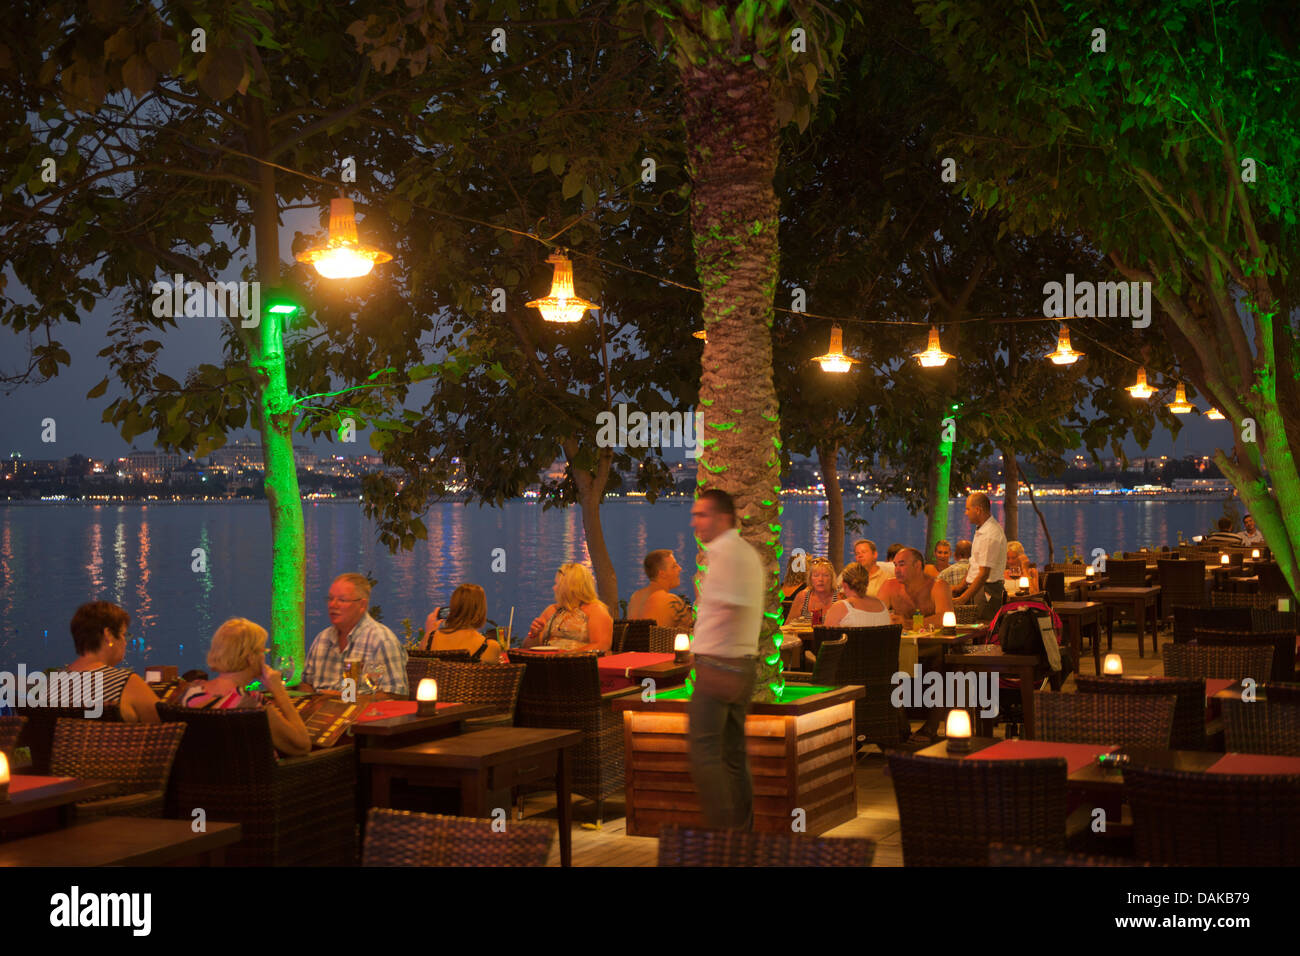 Türkei, Provinz Antalya, Side, Selimiye, Platz am Hafen mit dem Orfoz Restaurant Banque D'Images